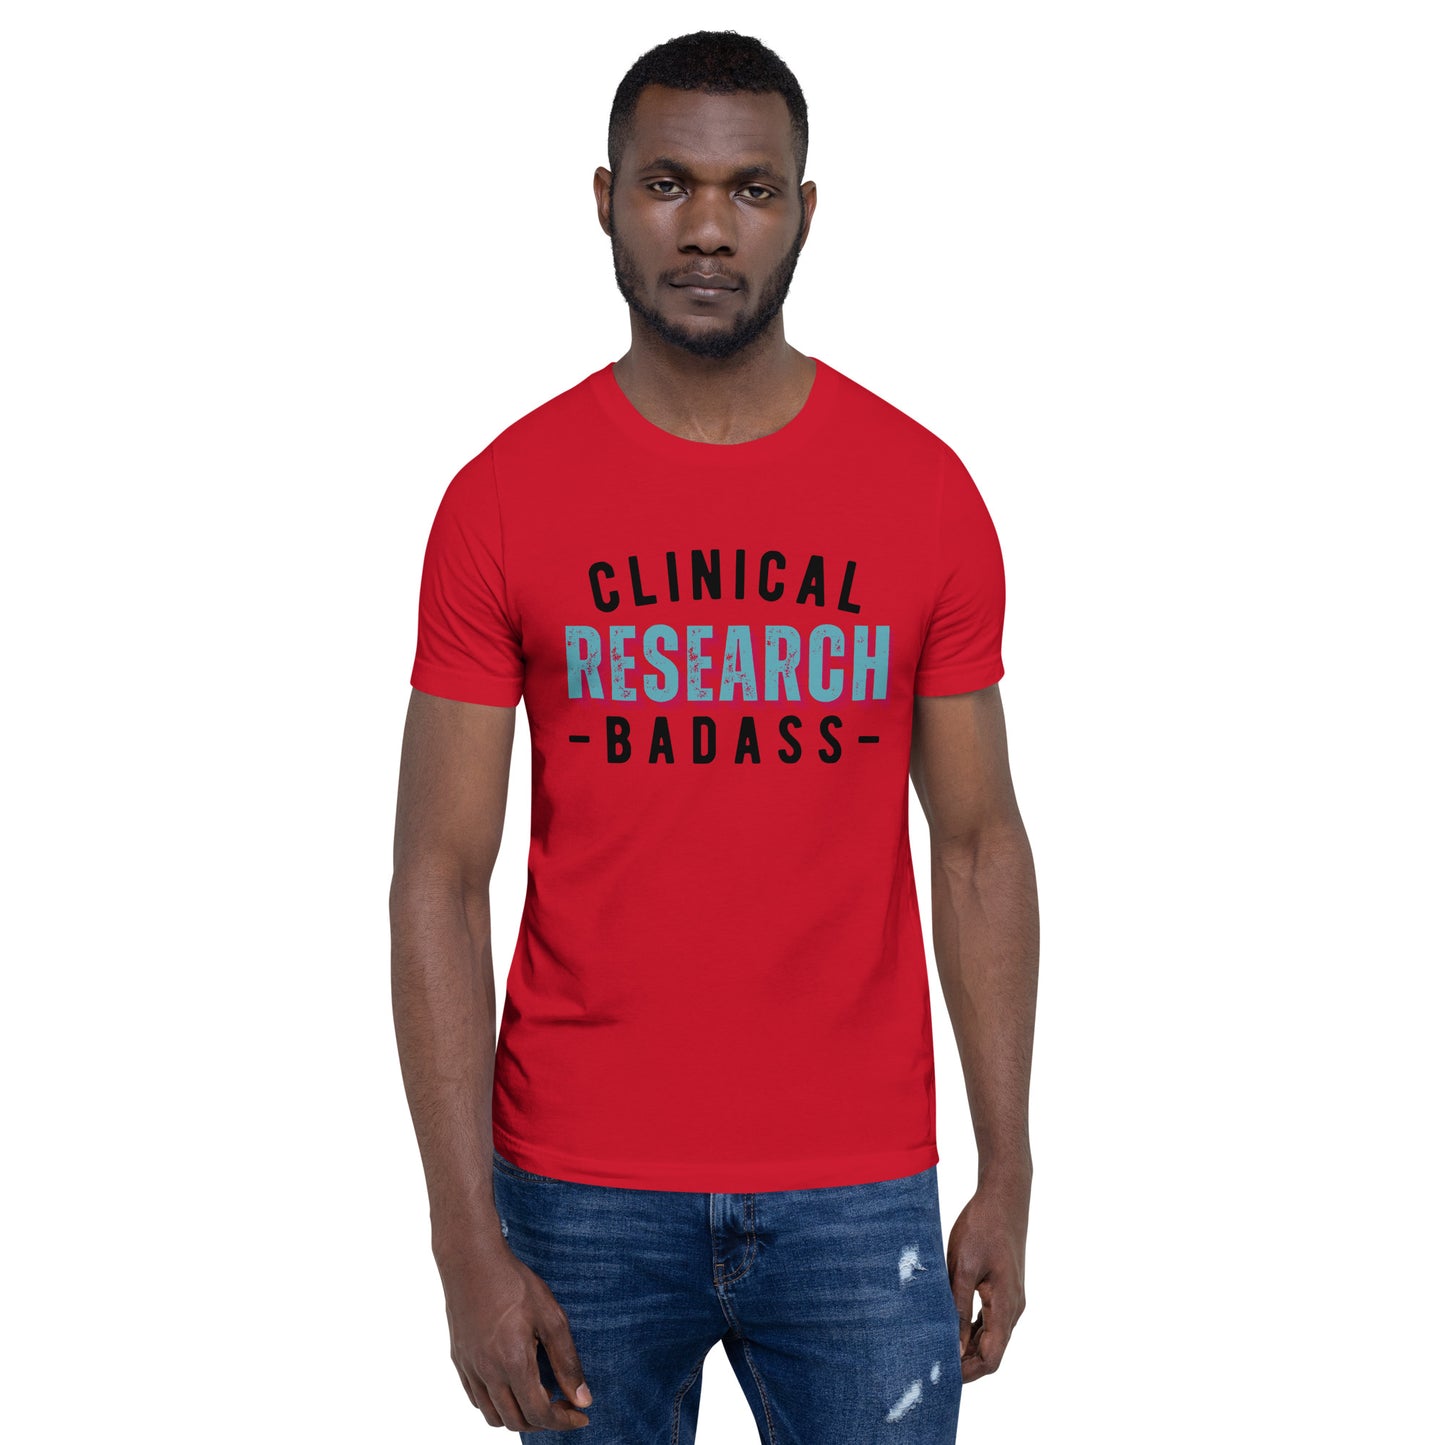 BADASS - Unisex t-shirt